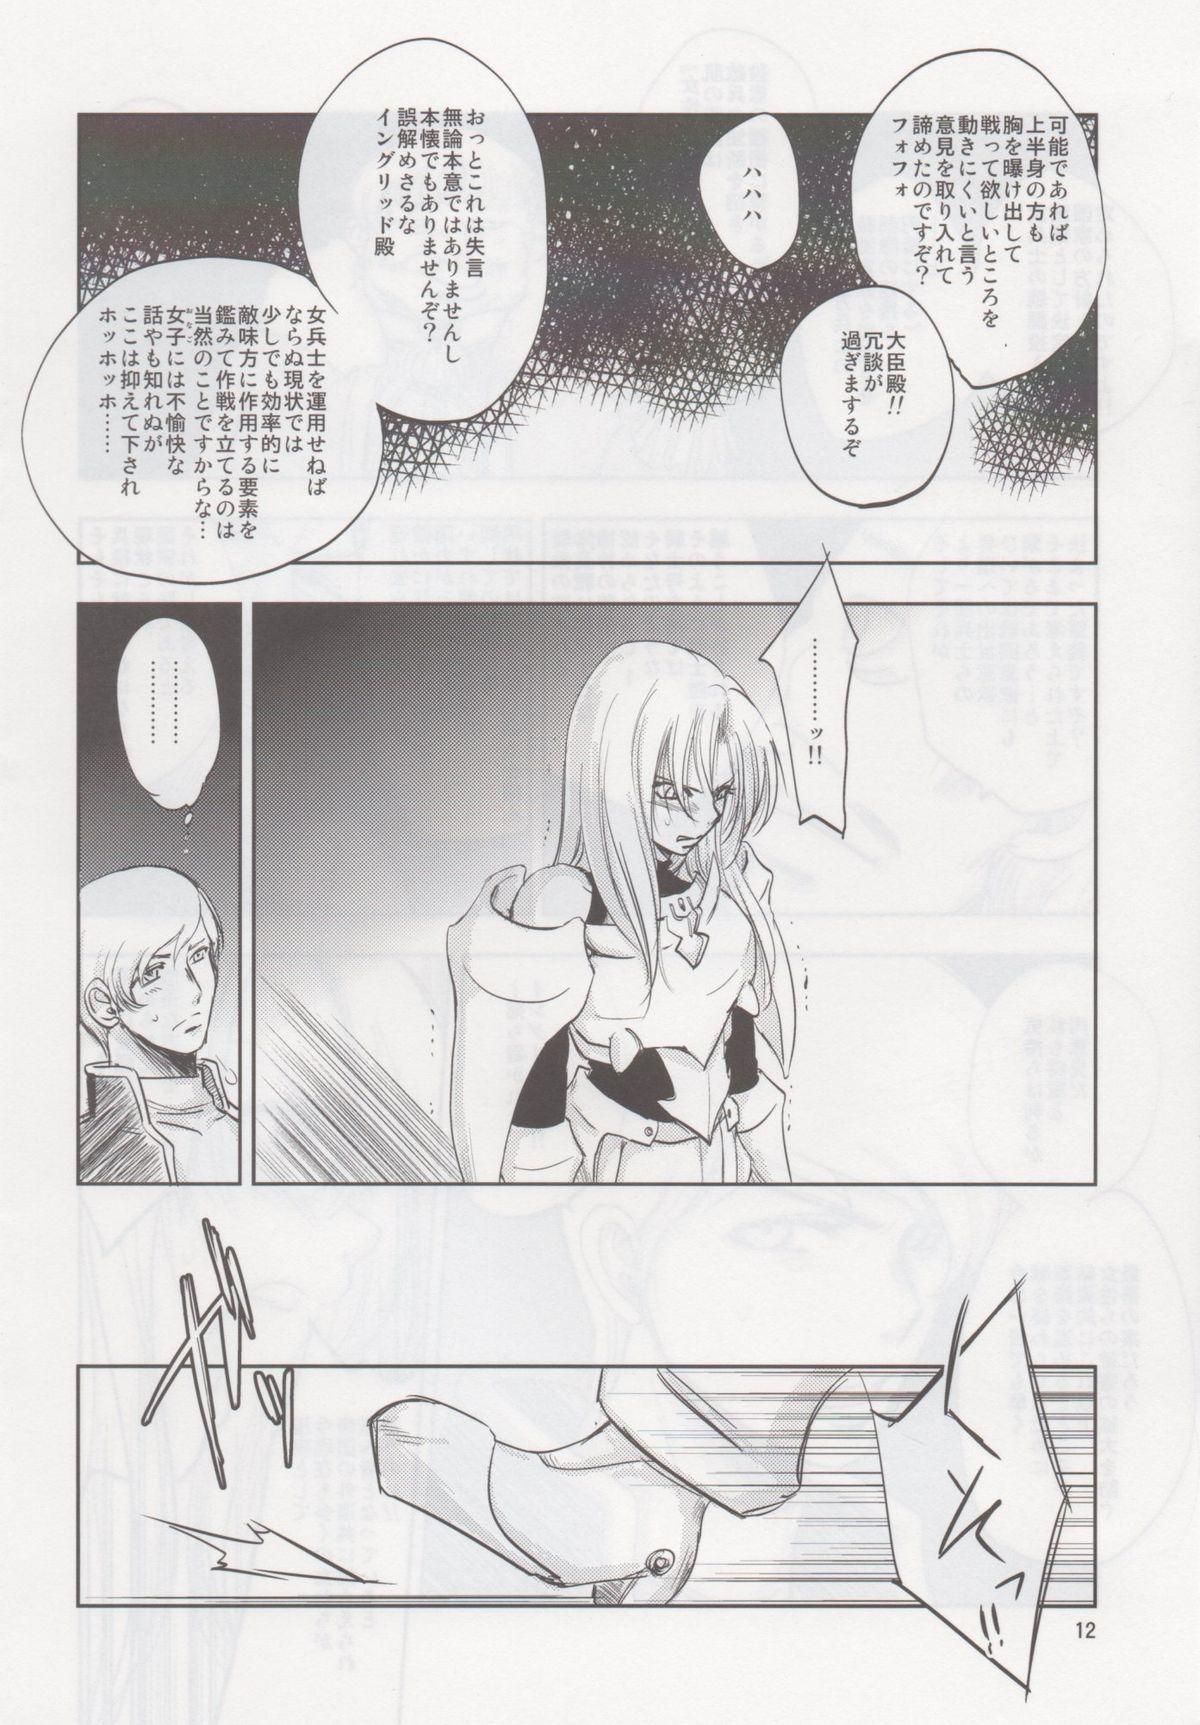 Leite GRASSEN'S WAR ANOTHER STORY Ex #02 Node Shinkou II Muscular - Page 11